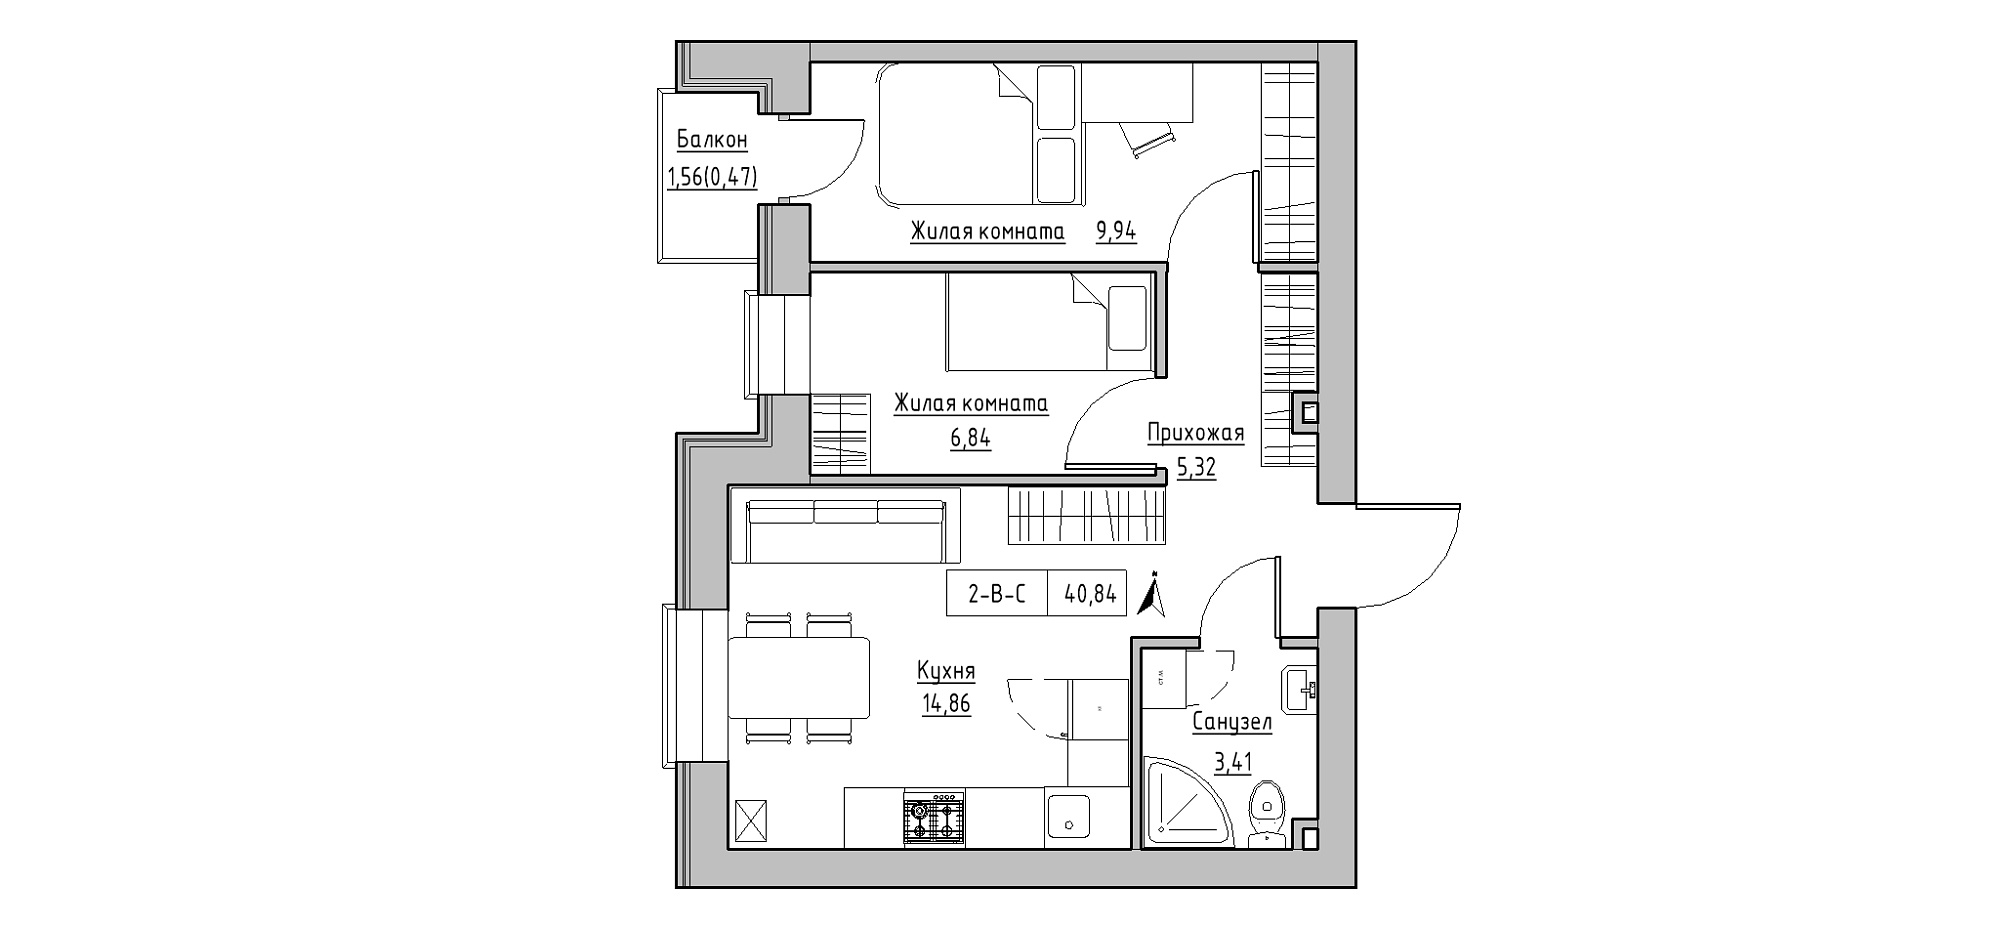 Планировка 2-к квартира площей 40.84м2, KS-020-02/0010.